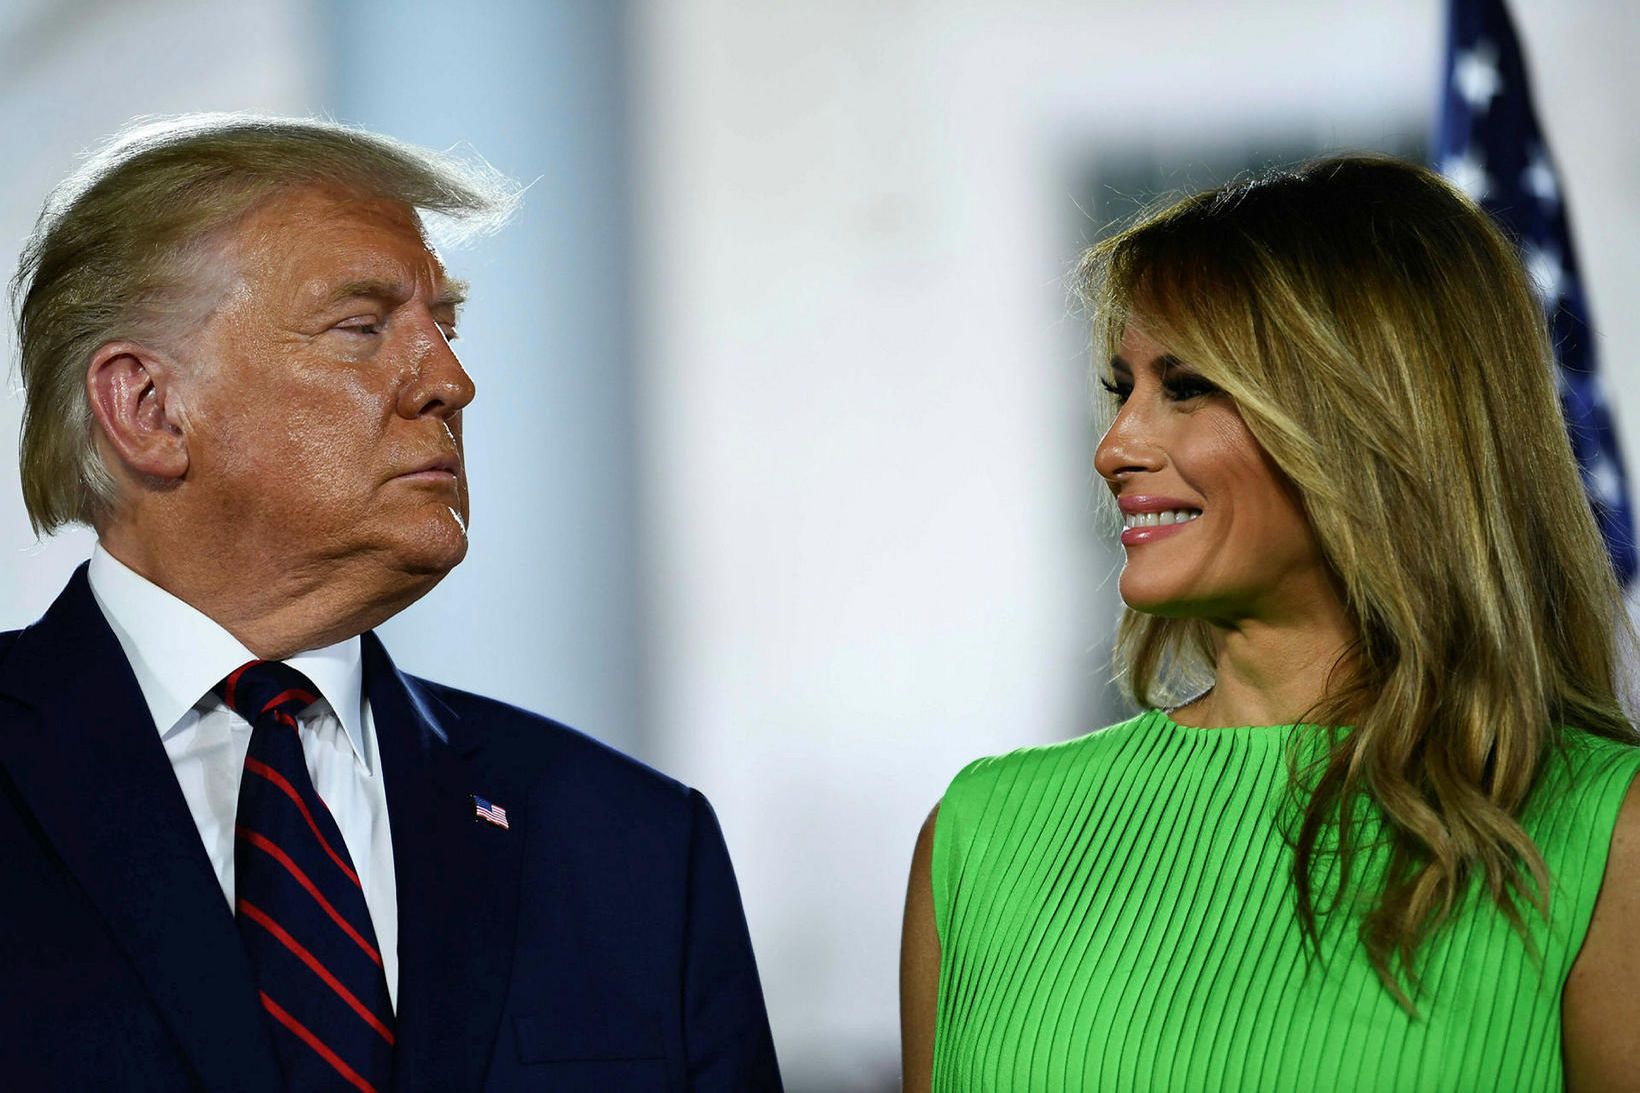 Donald og Melania Trump giftu sig fyrir rúmlega 15 árum.